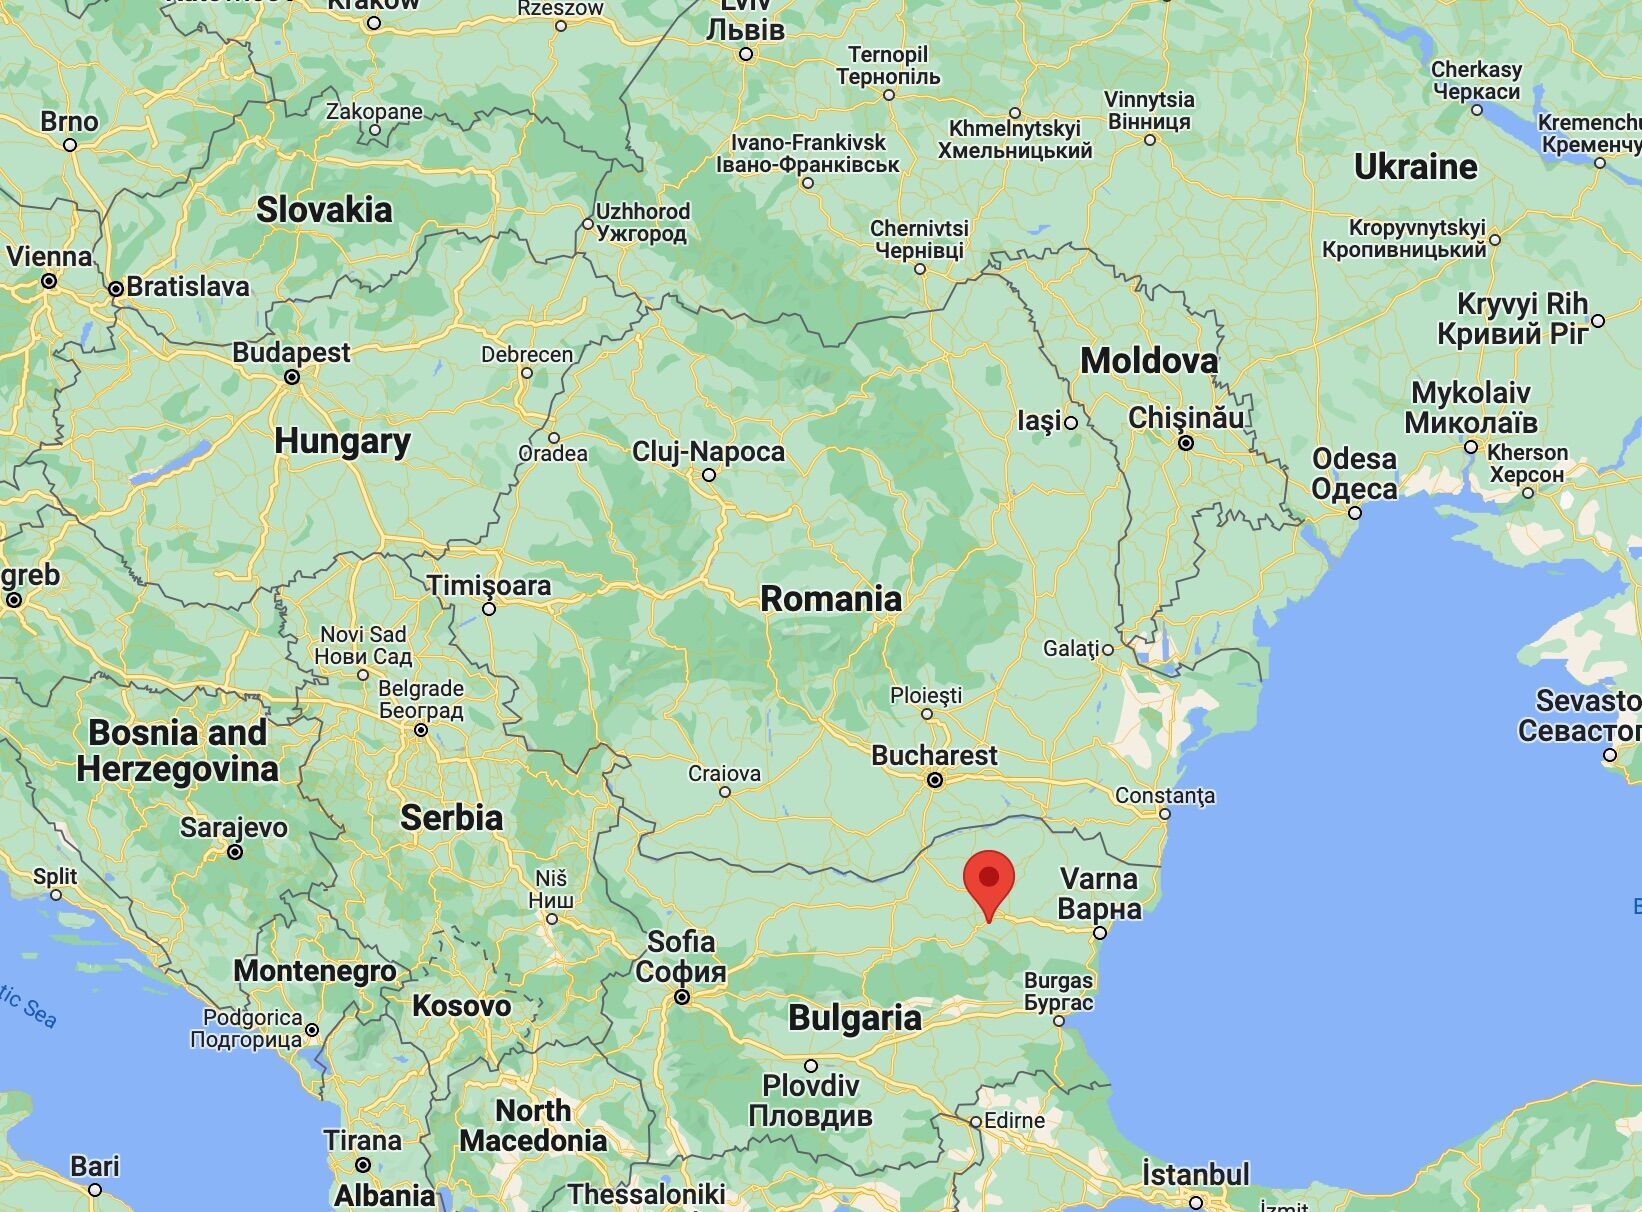 Самолет стартовал из Венгрии, пролетел над Сербией и наконец сел в болгарских Боуховцах